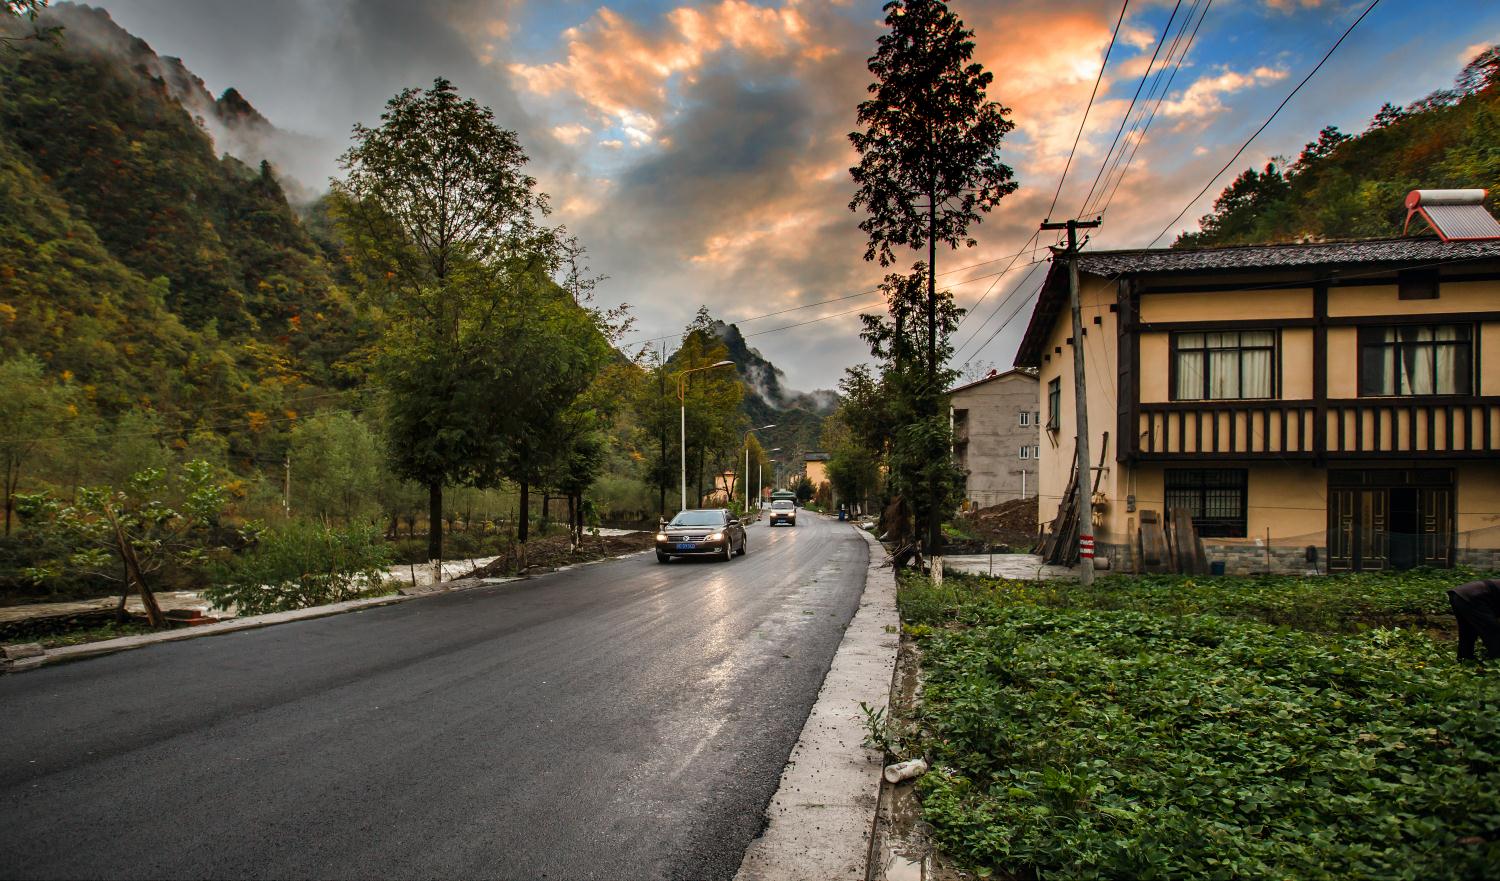 橡树摄影:寻找最美乡村公路